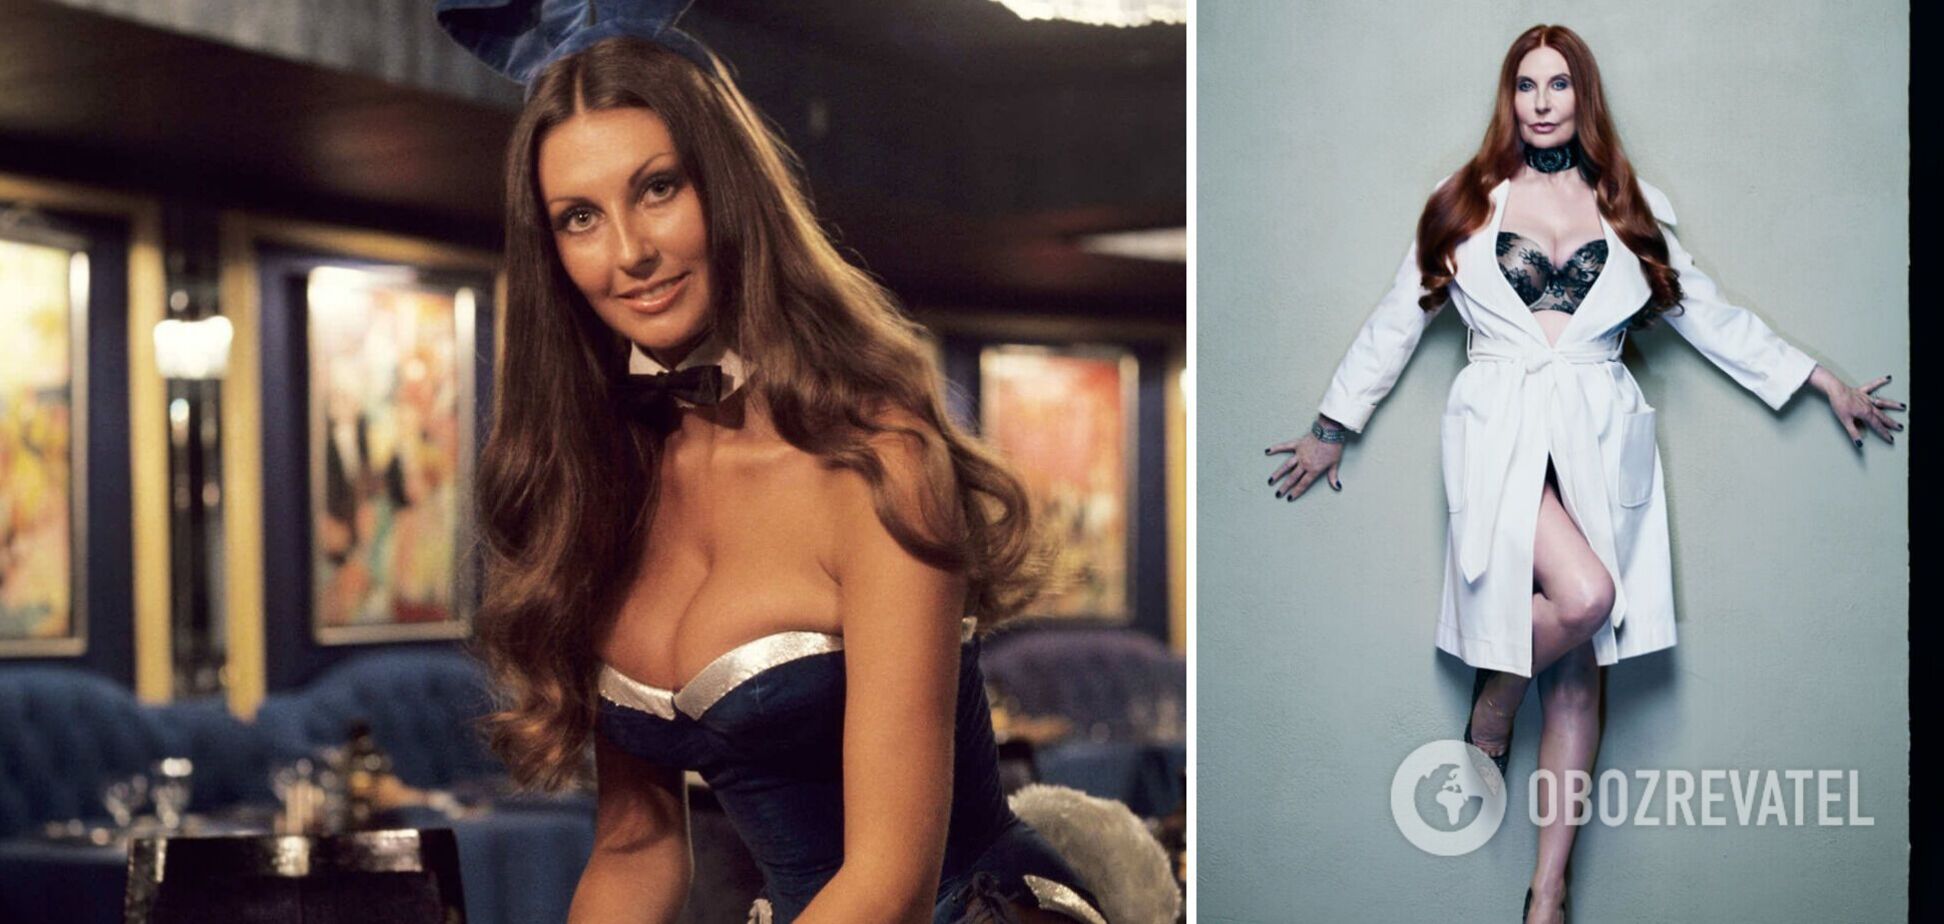 Як виглядала і скільки заробляла перша модель Playboy, якій зараз 72 роки. Фото